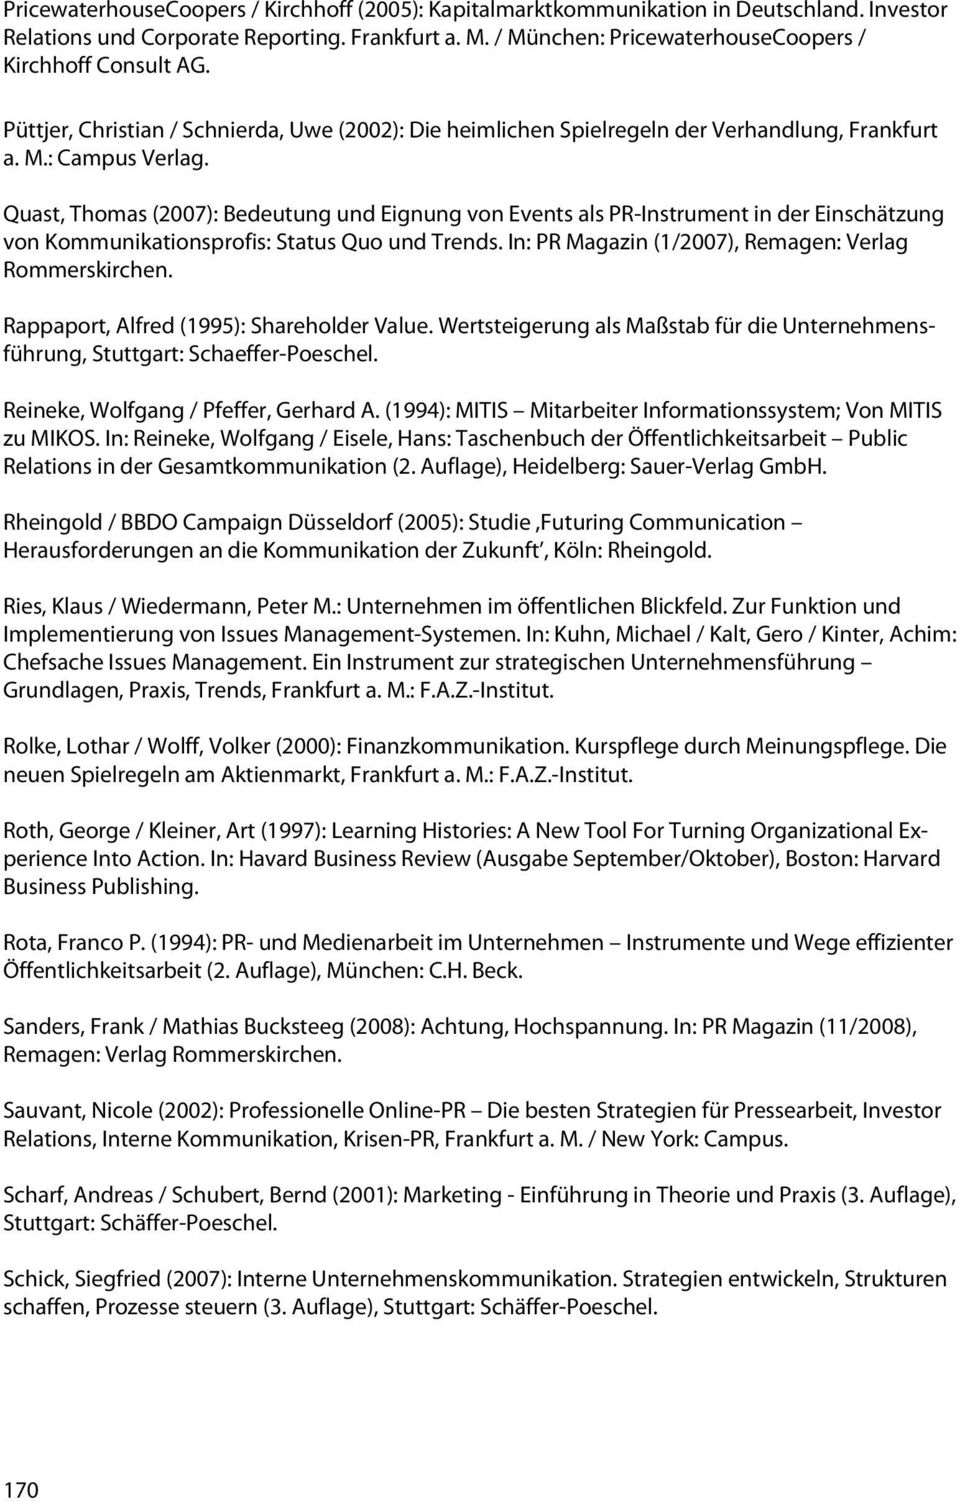 Quast, Thomas (2007): Bedeutung und Eignung von Events als PR-Instrument in der Einschätzung von Kommunikationsprofis: Status Quo und Trends. In: PR Magazin (1/2007), Remagen: Verlag Rommerskirchen.